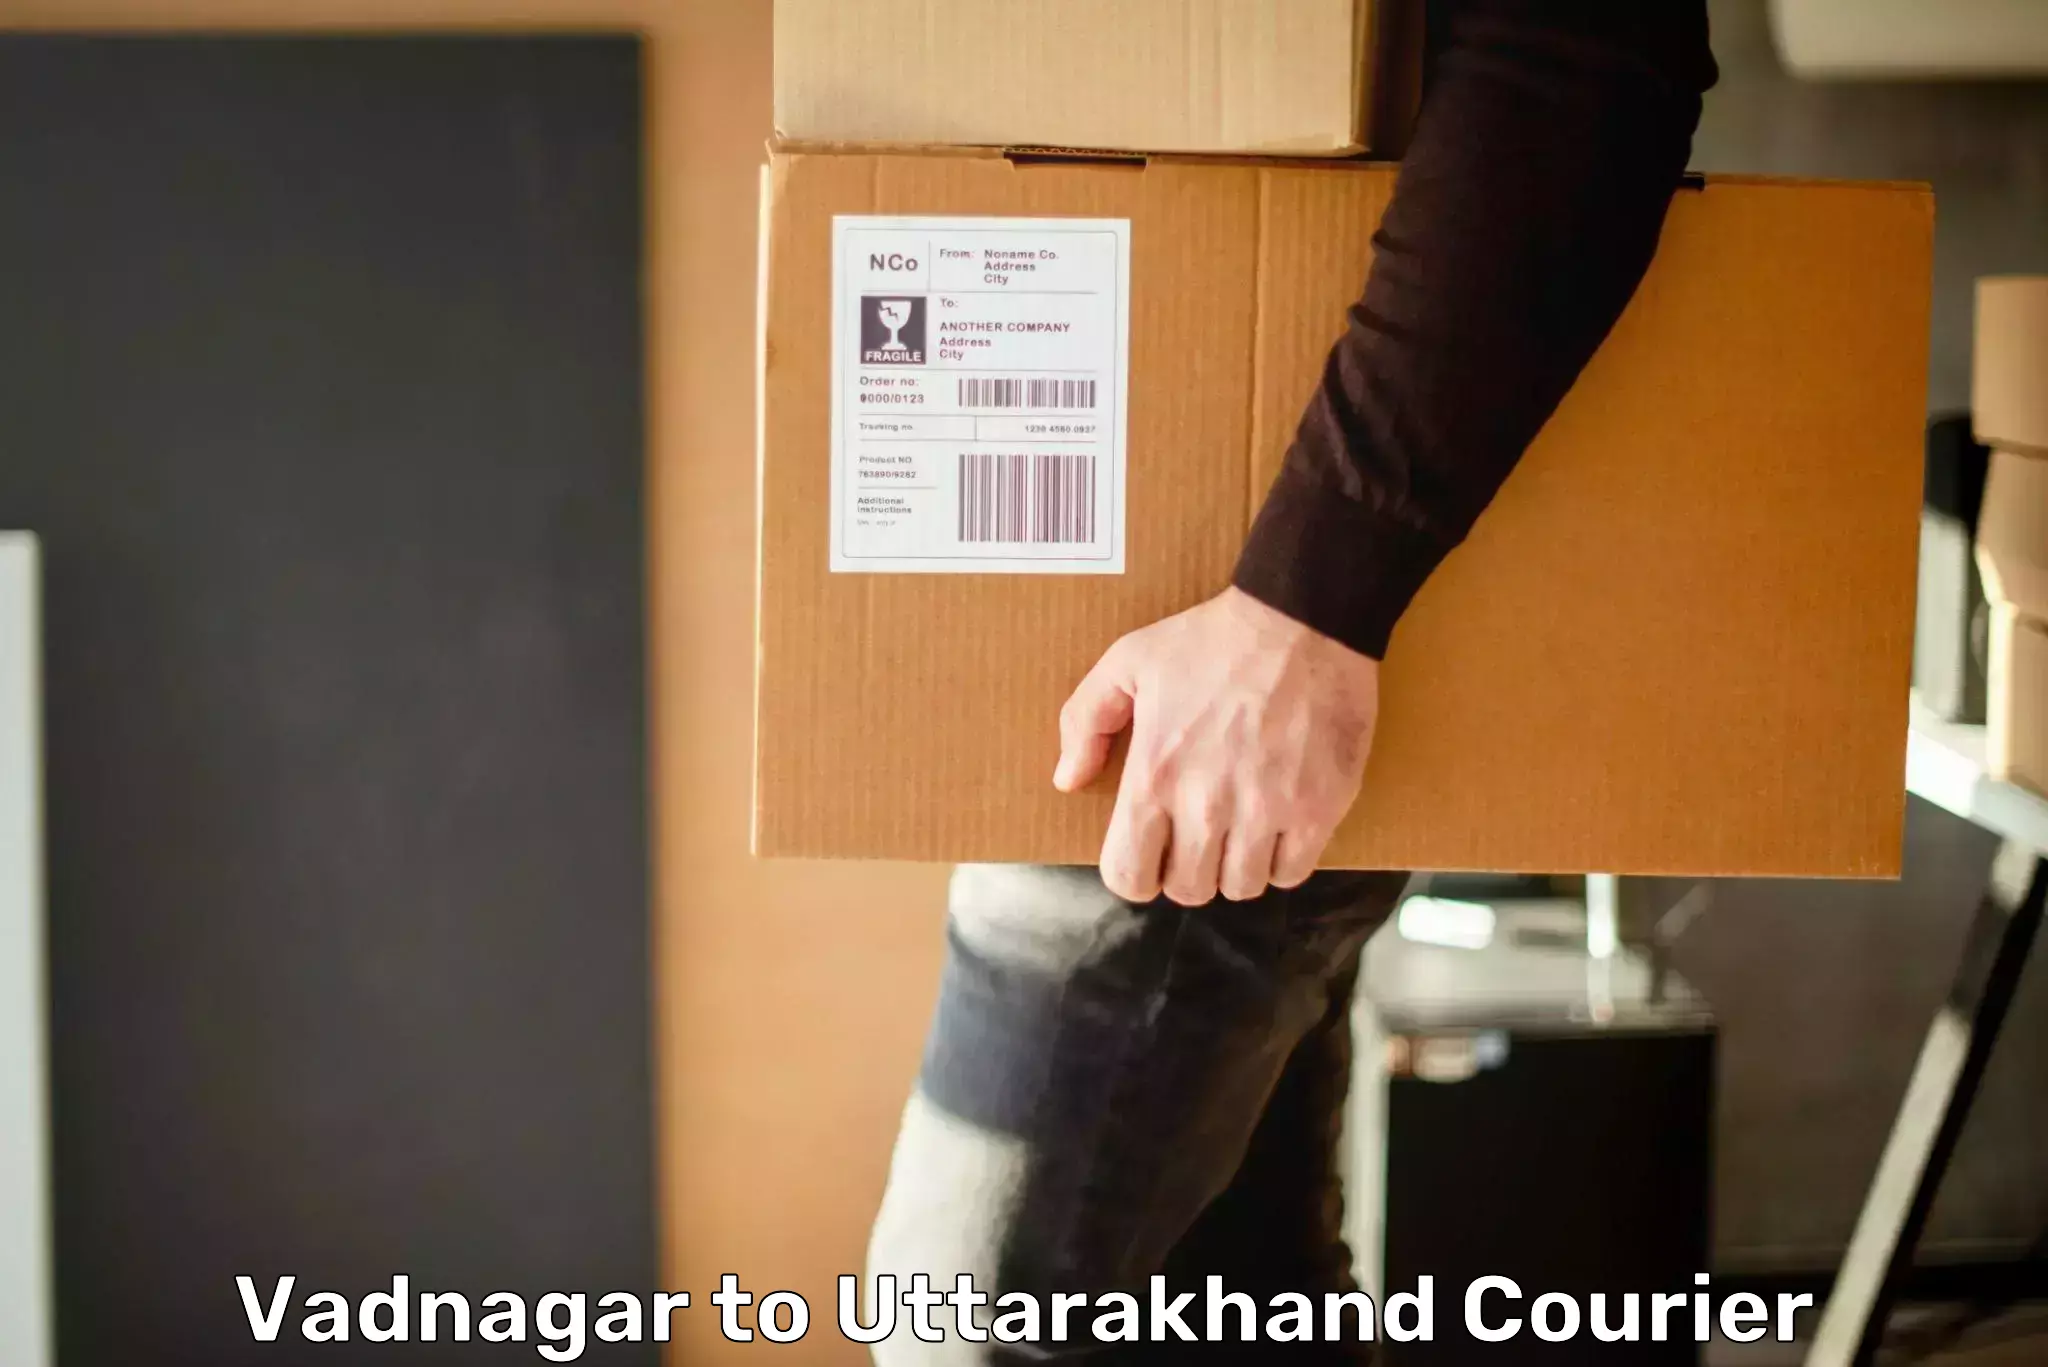 Urban courier service Vadnagar to Tehri Garhwal